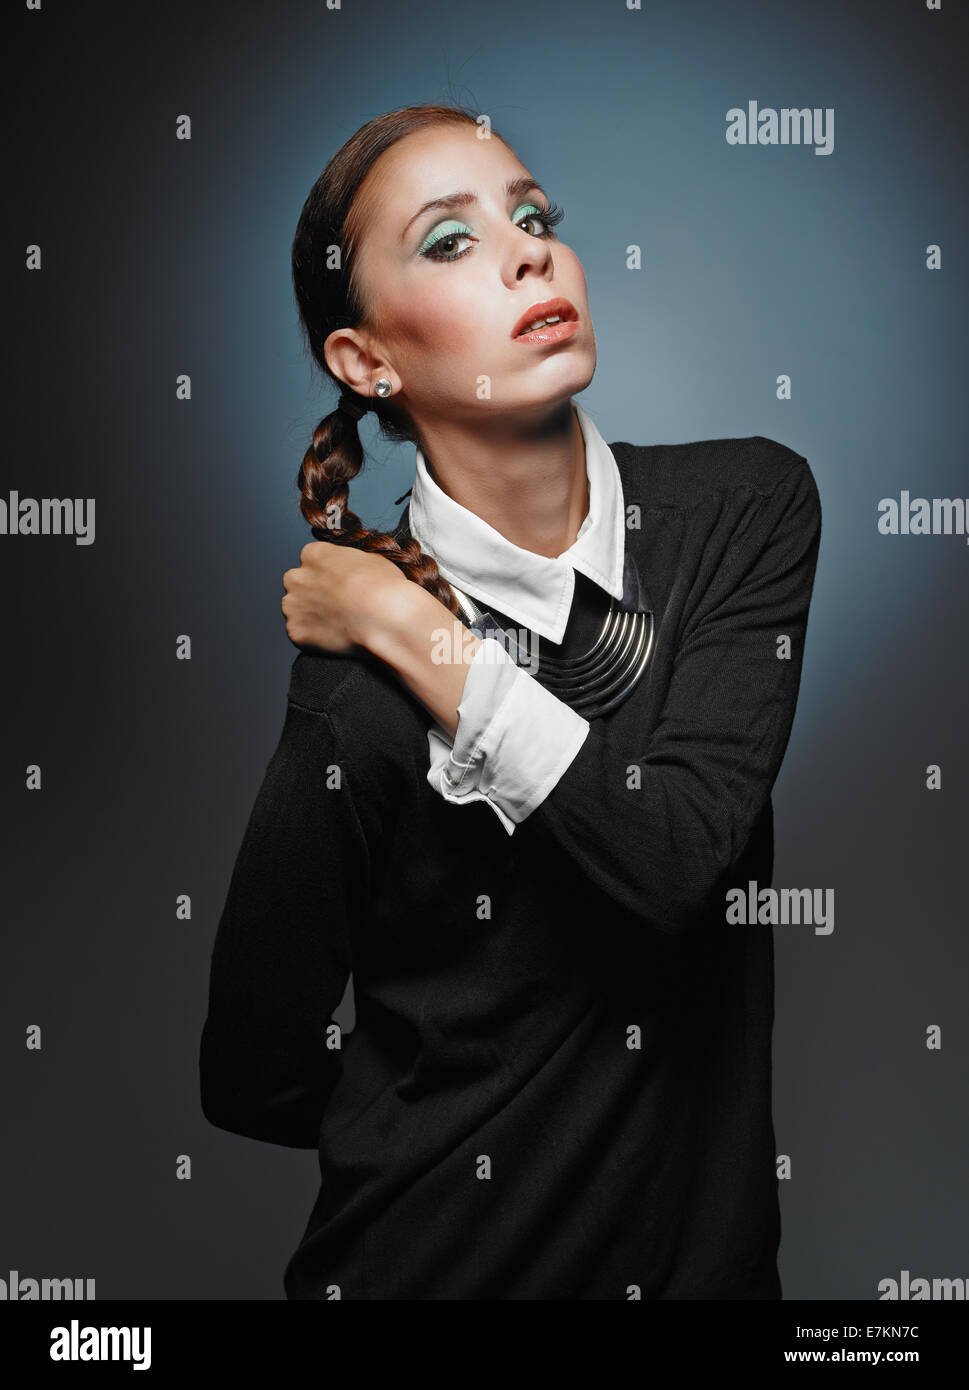 Belle jeune femme portant pull et collier - studio shot Banque D'Images